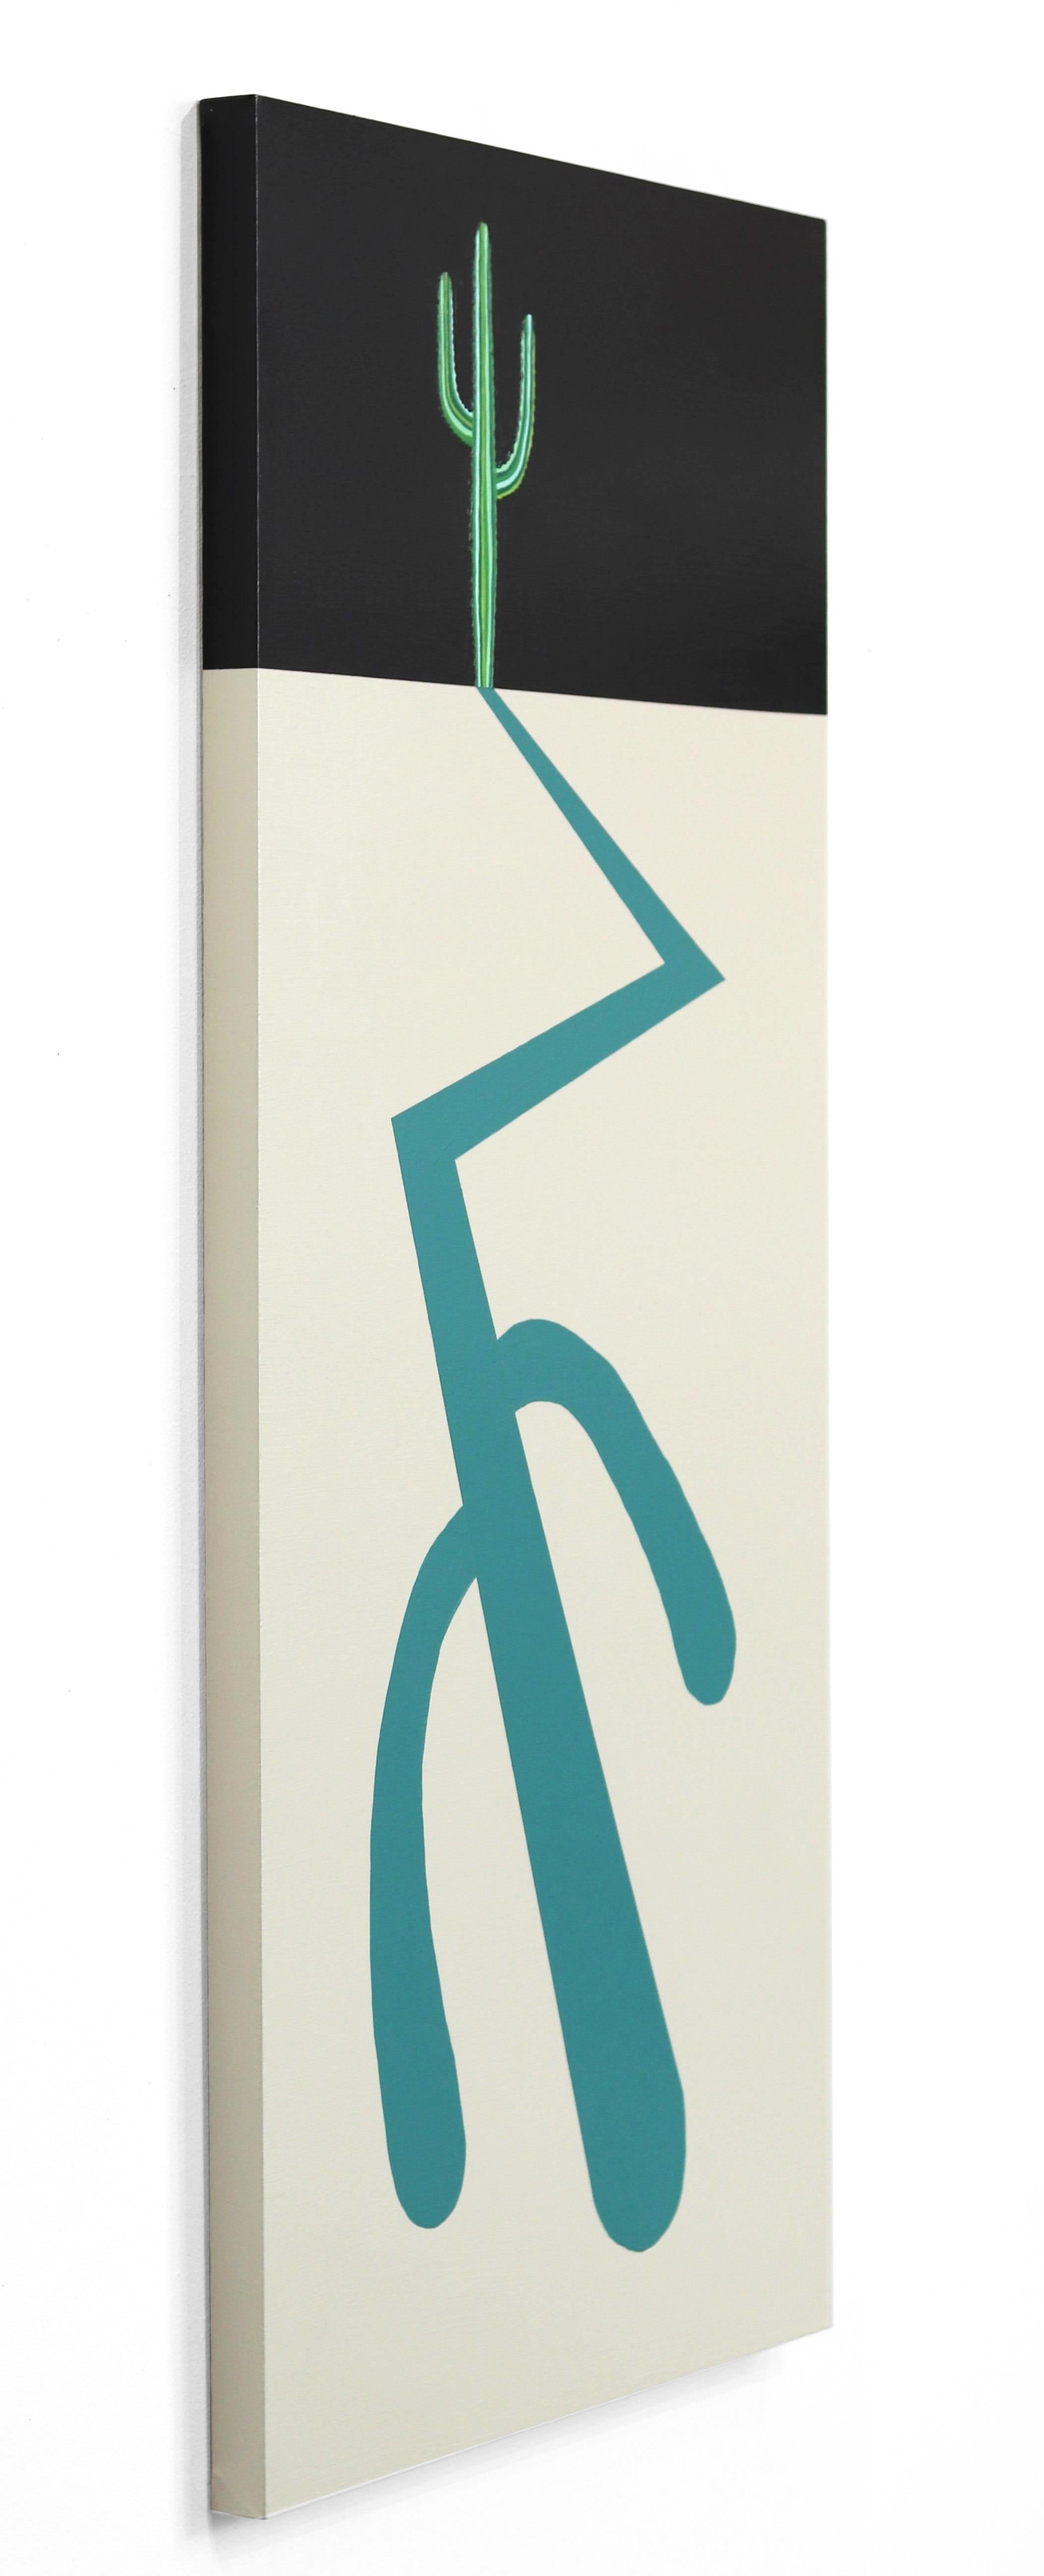 Will Beger et ses peintures contemporaines-minimalistes adoptent une approche tout à fait unique de l'art AM Contemporary. Influencé par sa jeunesse et inspiré par la Nature, il capture sans effort une esthétique vibrante et bohème qui est sans